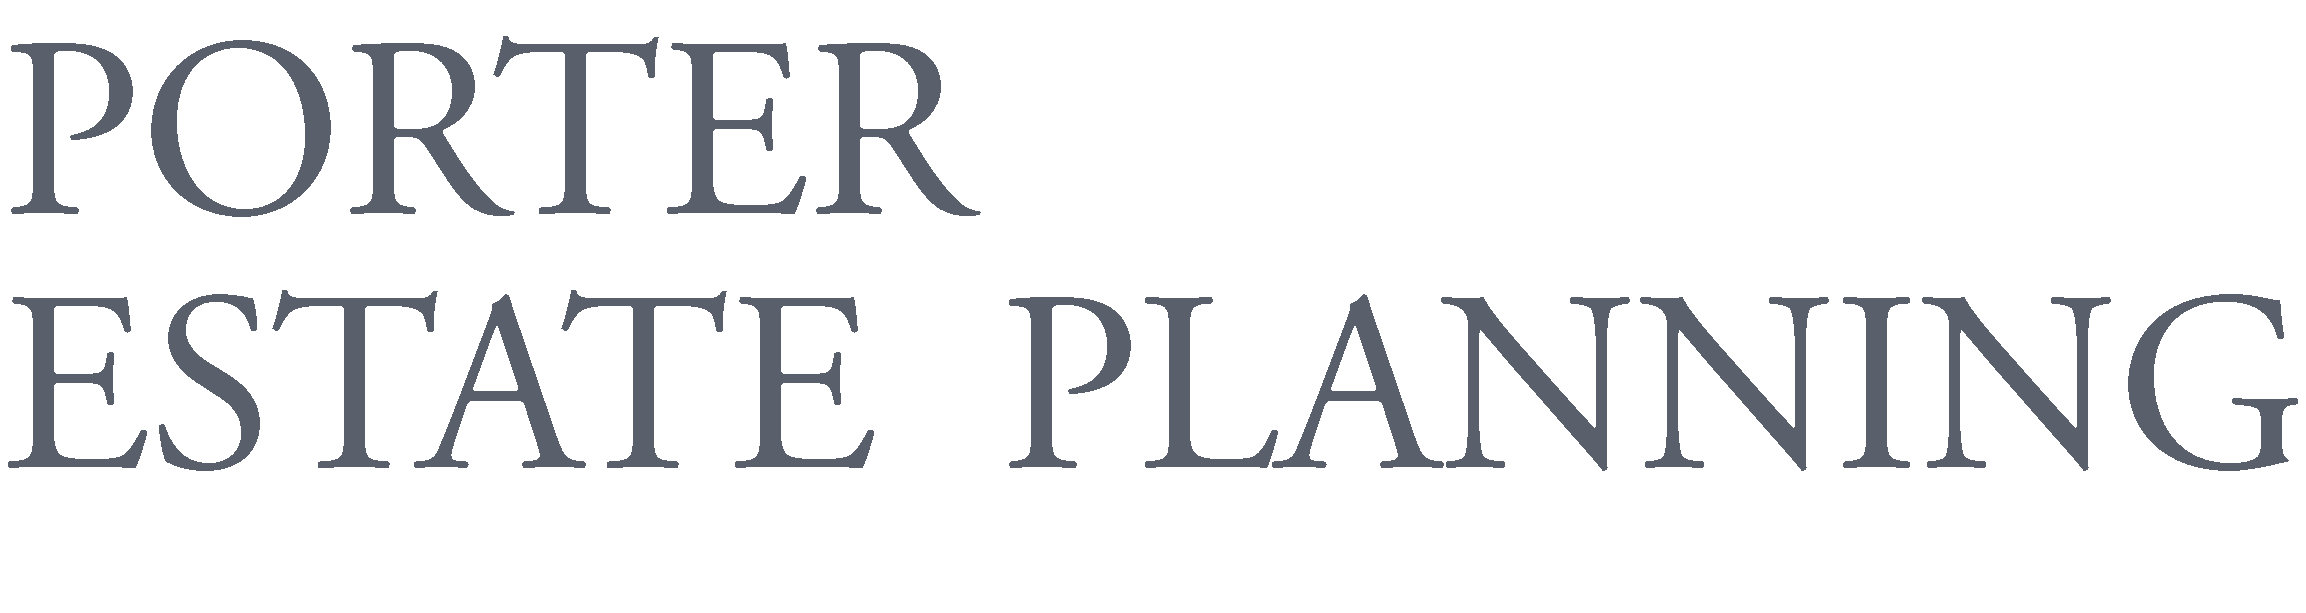 Porter Estate Planning